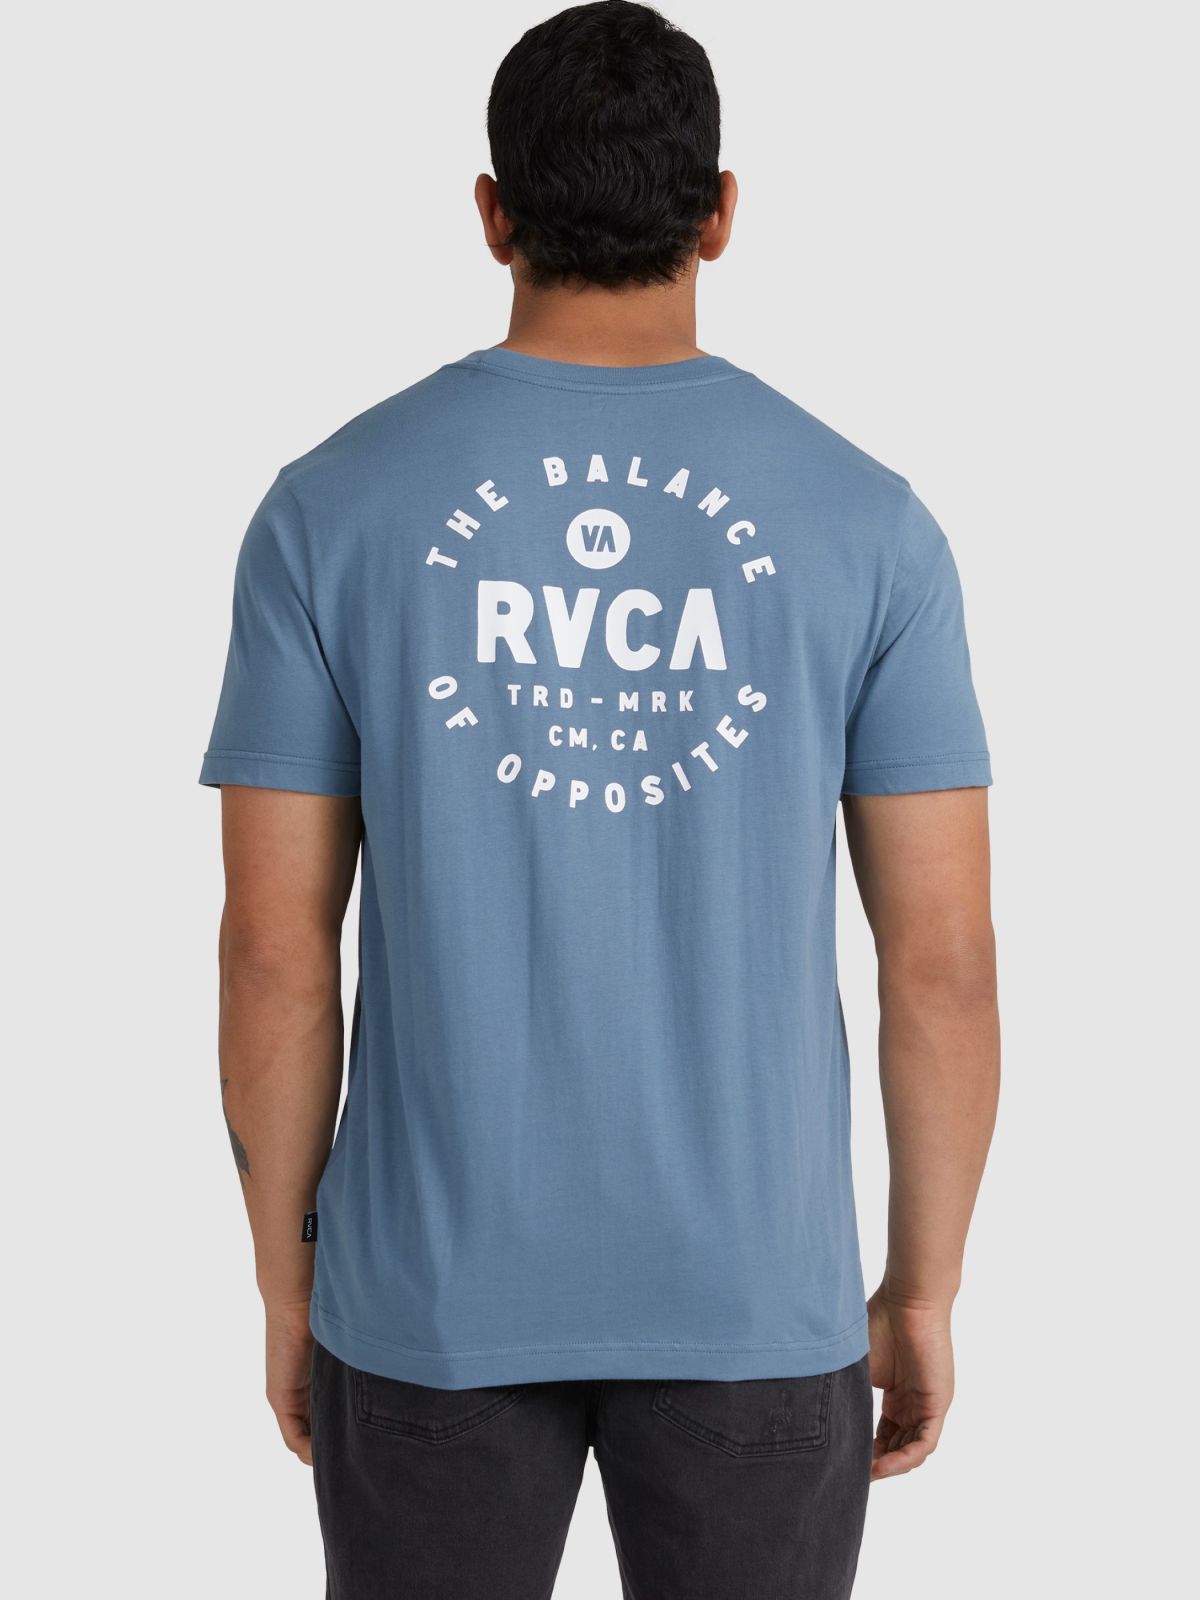  טי שירט עם הדפס לוגו של RVCA